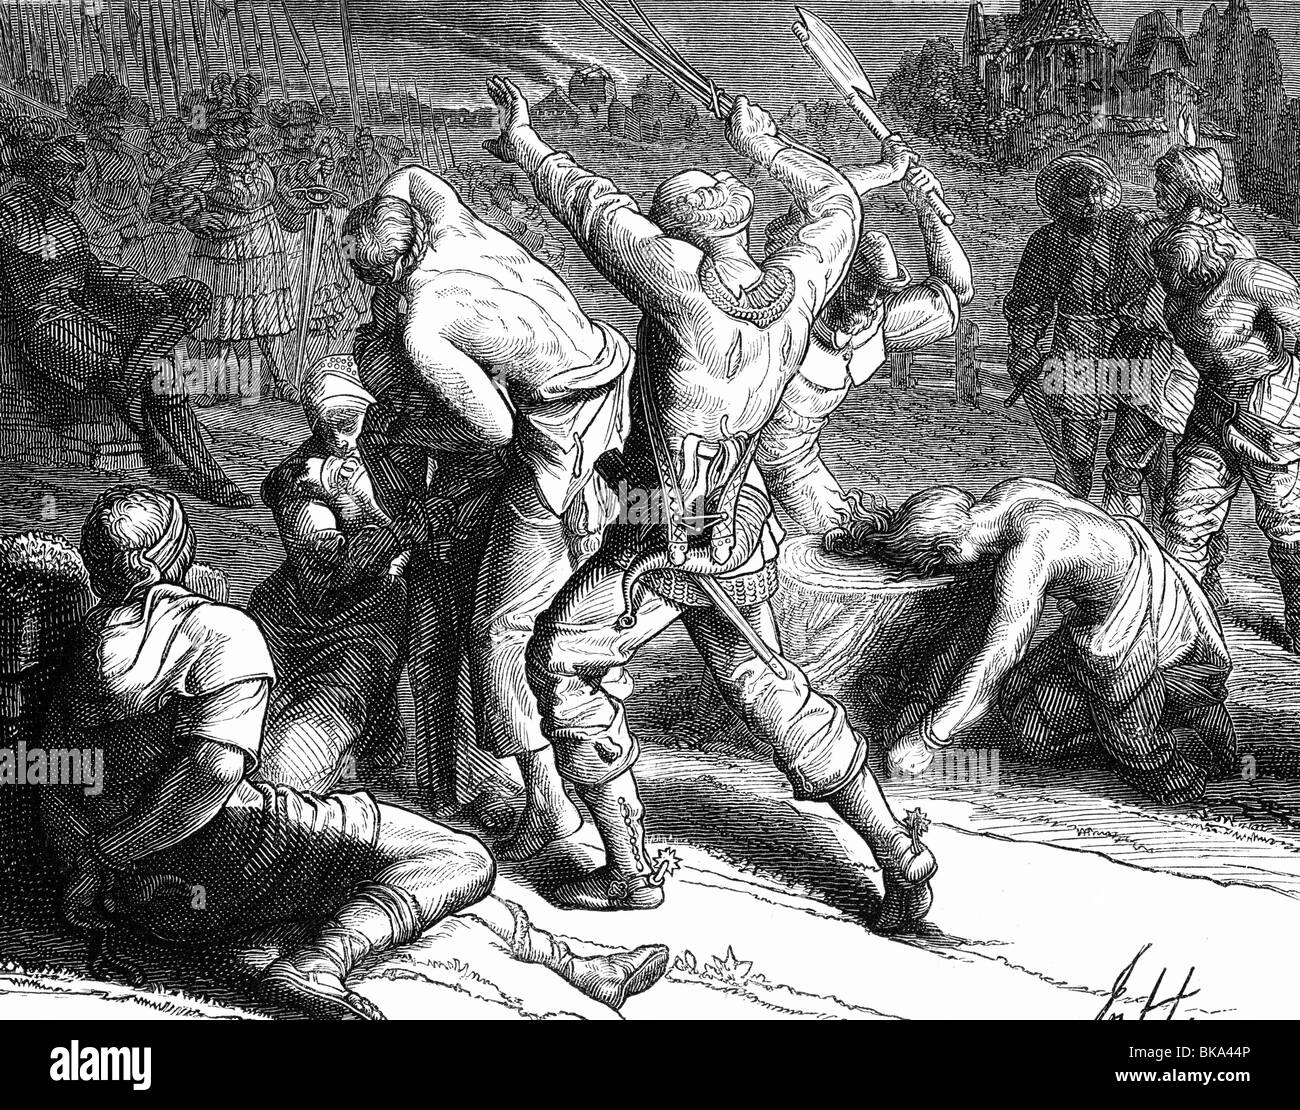 Eventi, guerra Dei Contadini tedeschi, 1524 - 1526, contadini ribelli sono torturati e decapitati dalle truppe di Ulrich, duca di Wuerttemberg, incisione del legno, 19th secolo, Foto Stock